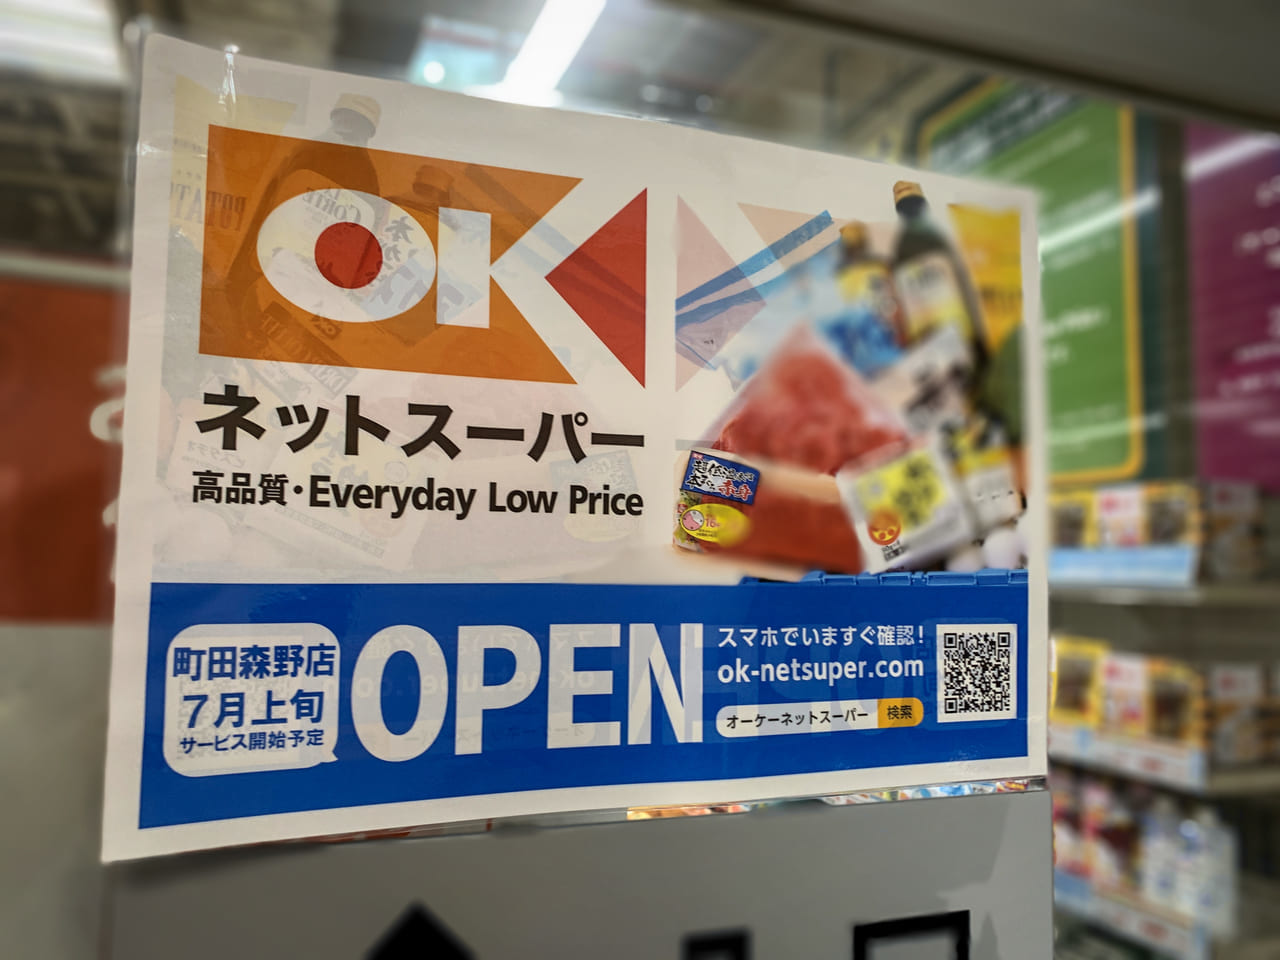 オーケーネットスーパー町田森野店オープンの貼紙